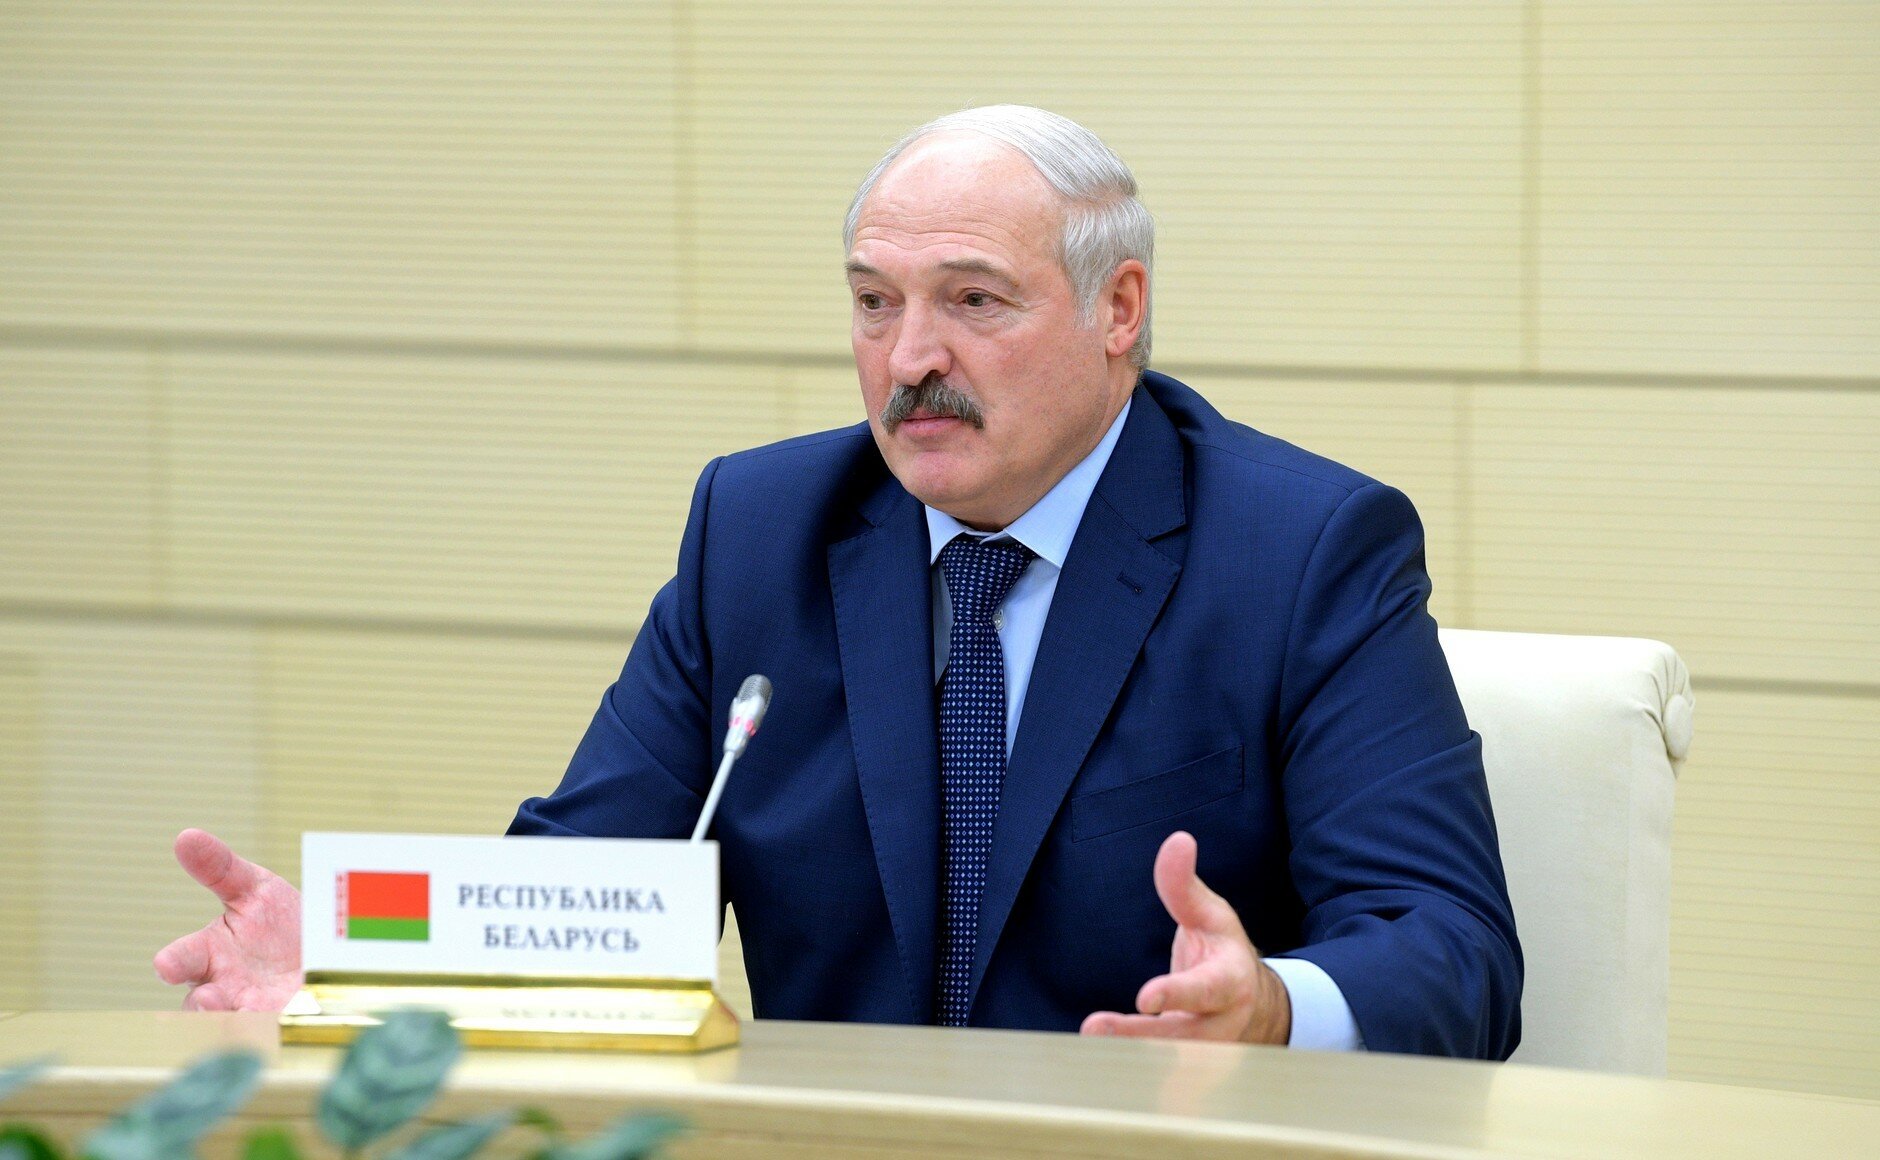 Лукашенко признался, за кого болел в "битве" Трампа и Клинтон на выборах президента США